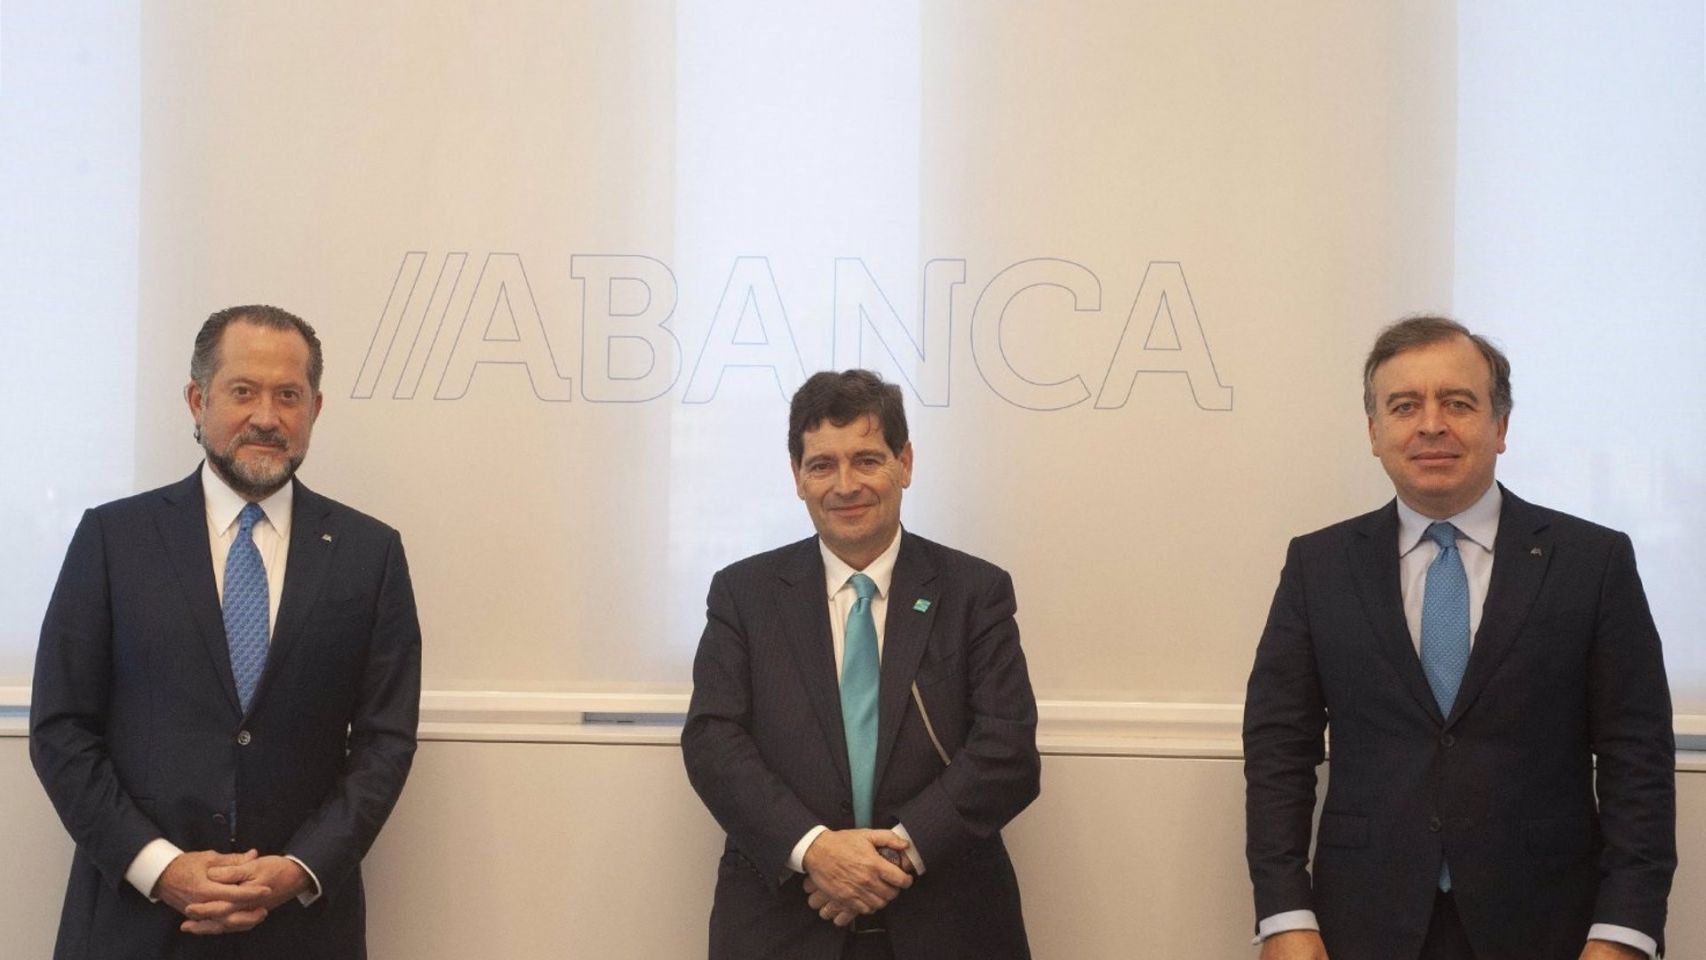 El presidente de Abanca, Juan Carlos Escotet; el consejero delegado de Novo Banco, Antonio Ramalho, y el consejero delegado de Abanca, Francisco Botas.